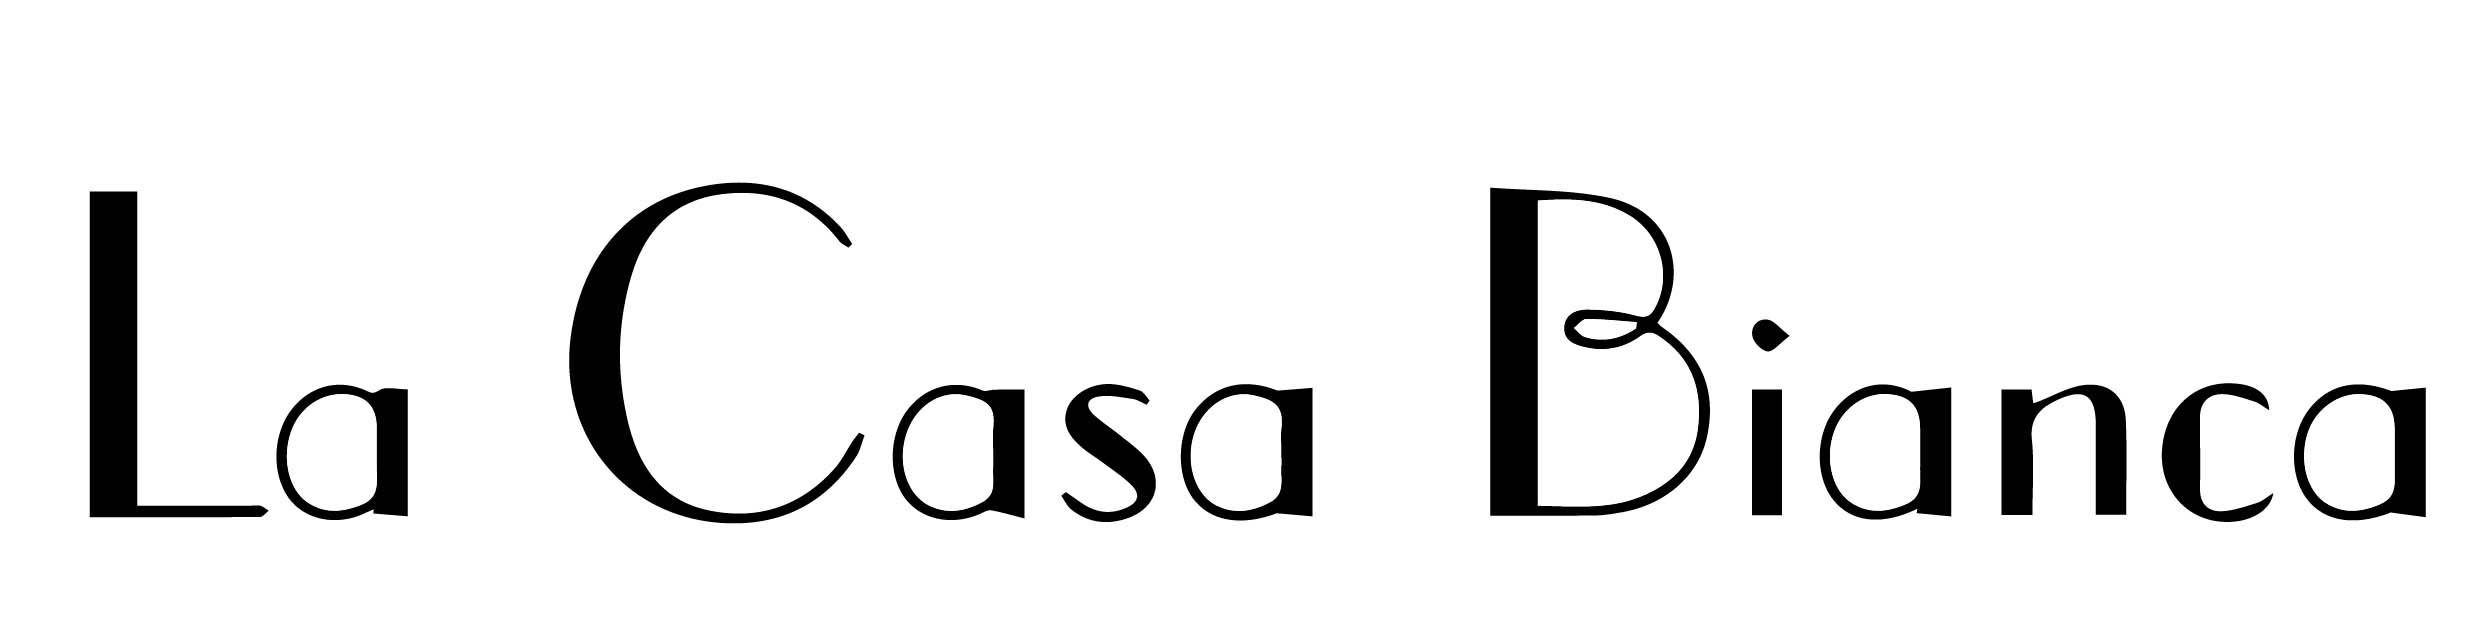 LA CASA BIANCA国际原创时尚馆